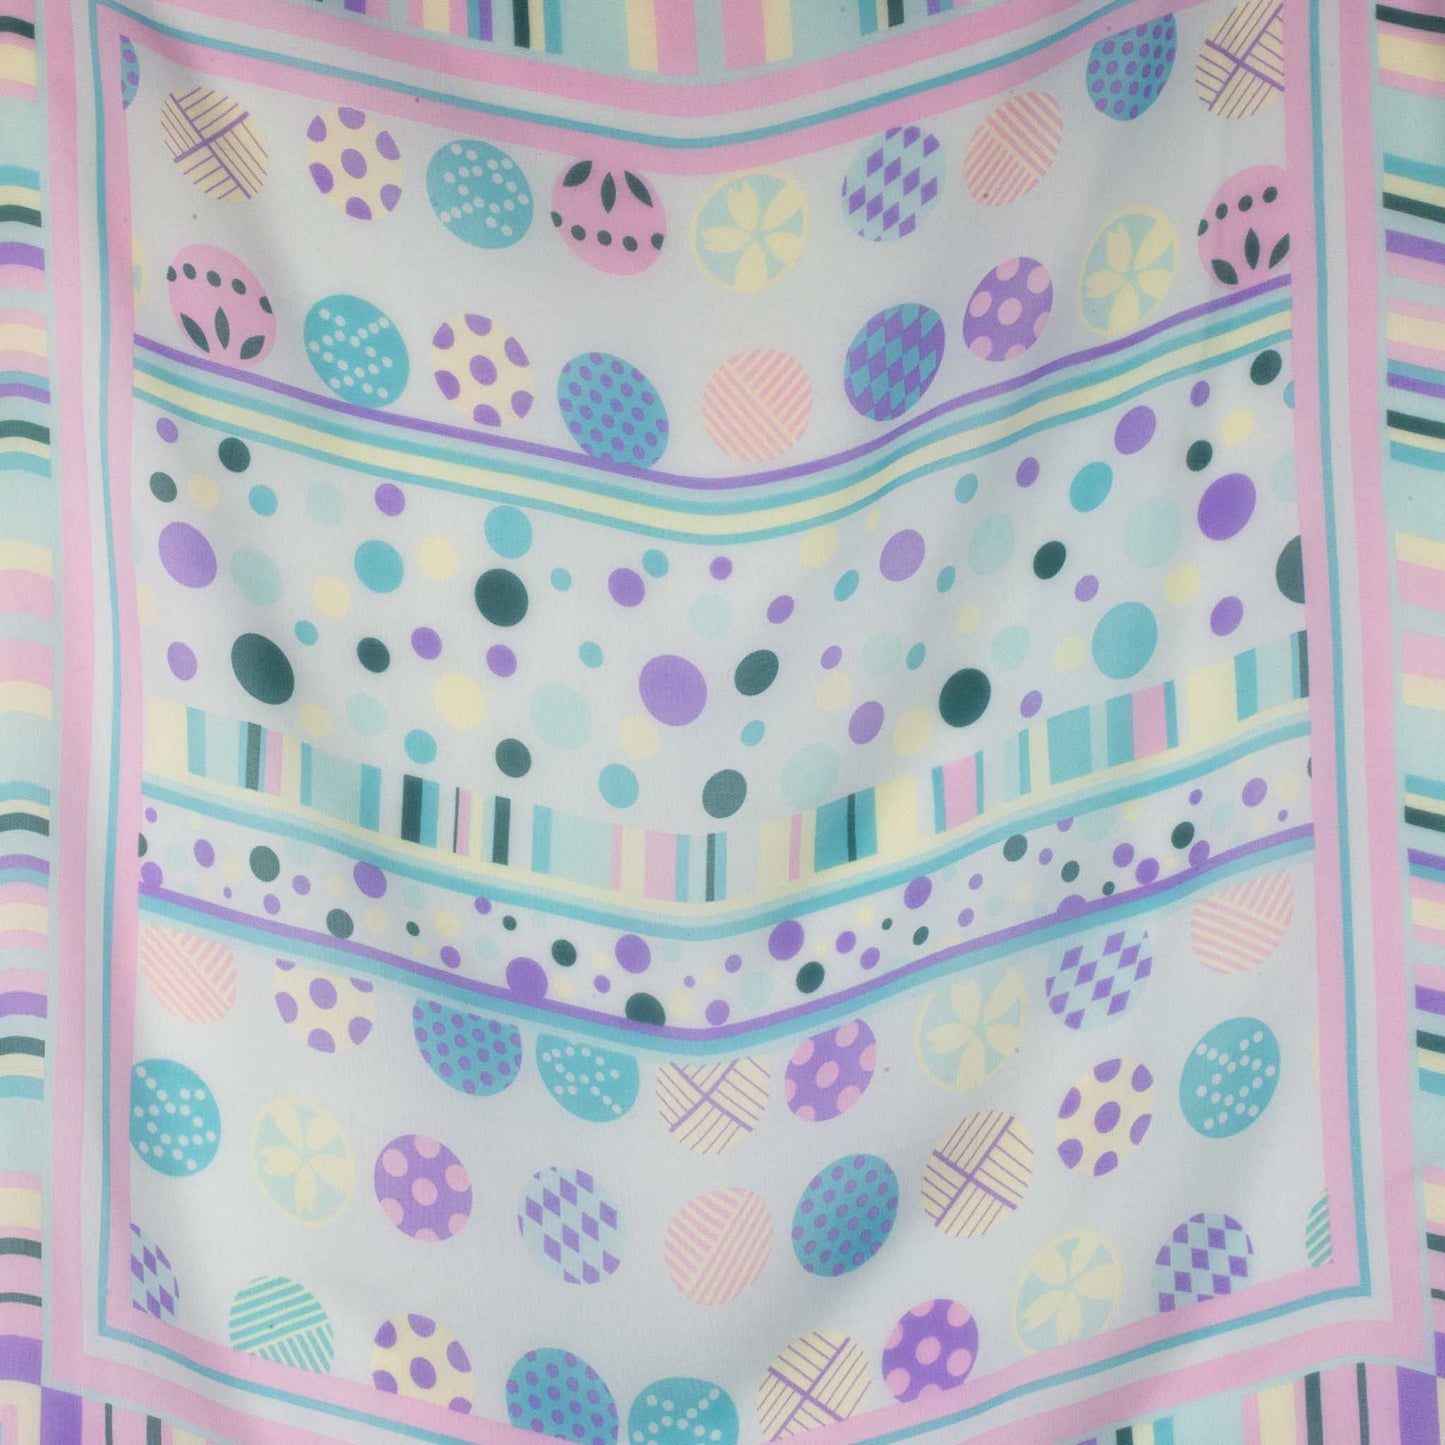 Eșarfă damă din mătase , imprimeu cu buline abstracte și dungi, 65 x 65 cm - Fresh Vibes